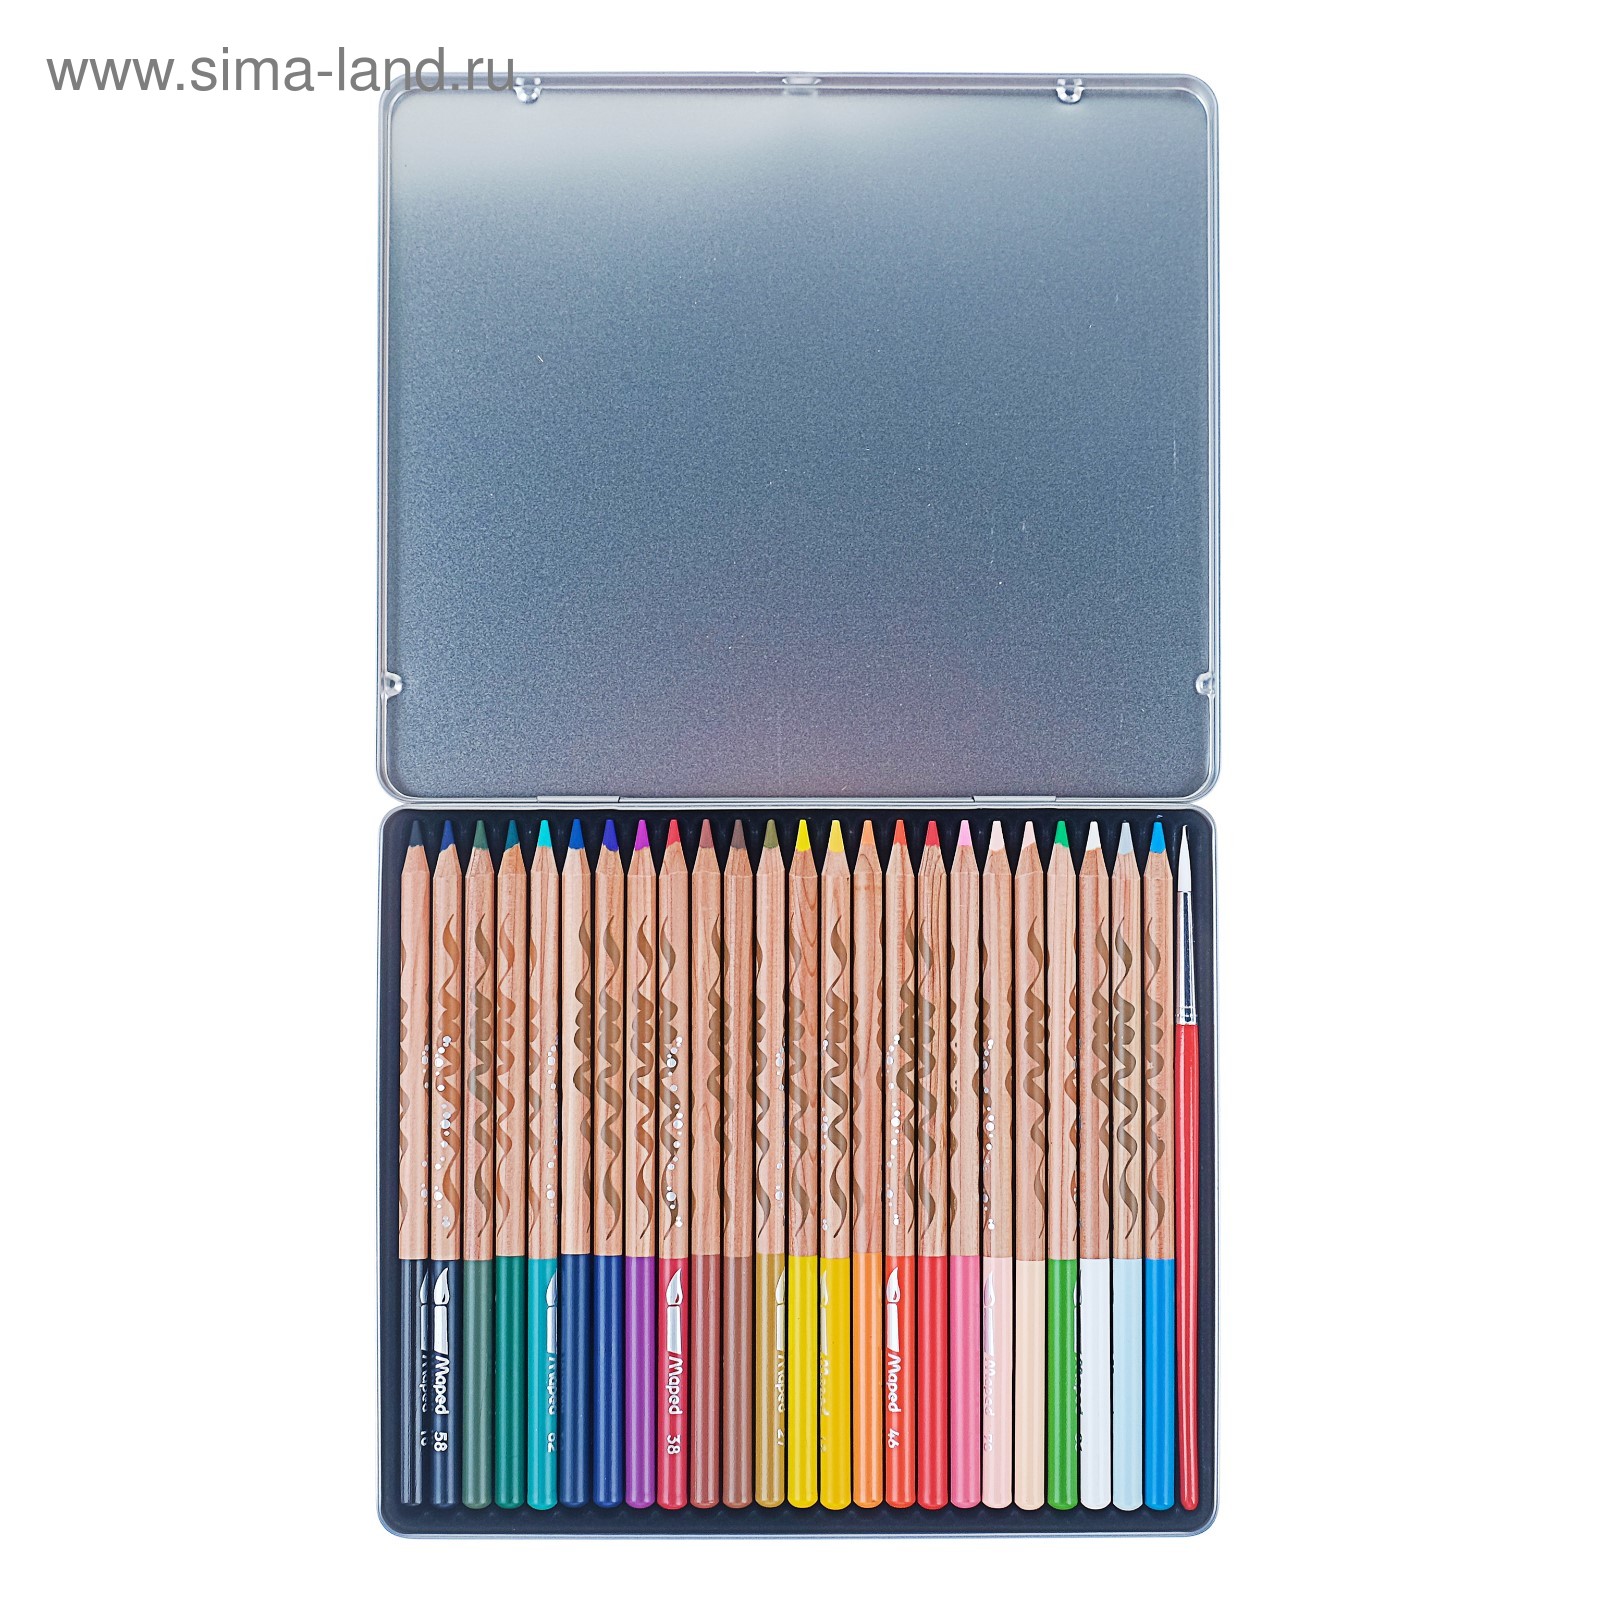 Цветные карандаши в пенале. Акварельные карандаши 24 цвета. Maped карандаши 24 цвета. Акварельные карандаши Maped. Акварельные карандаши Феникс +24цвета.